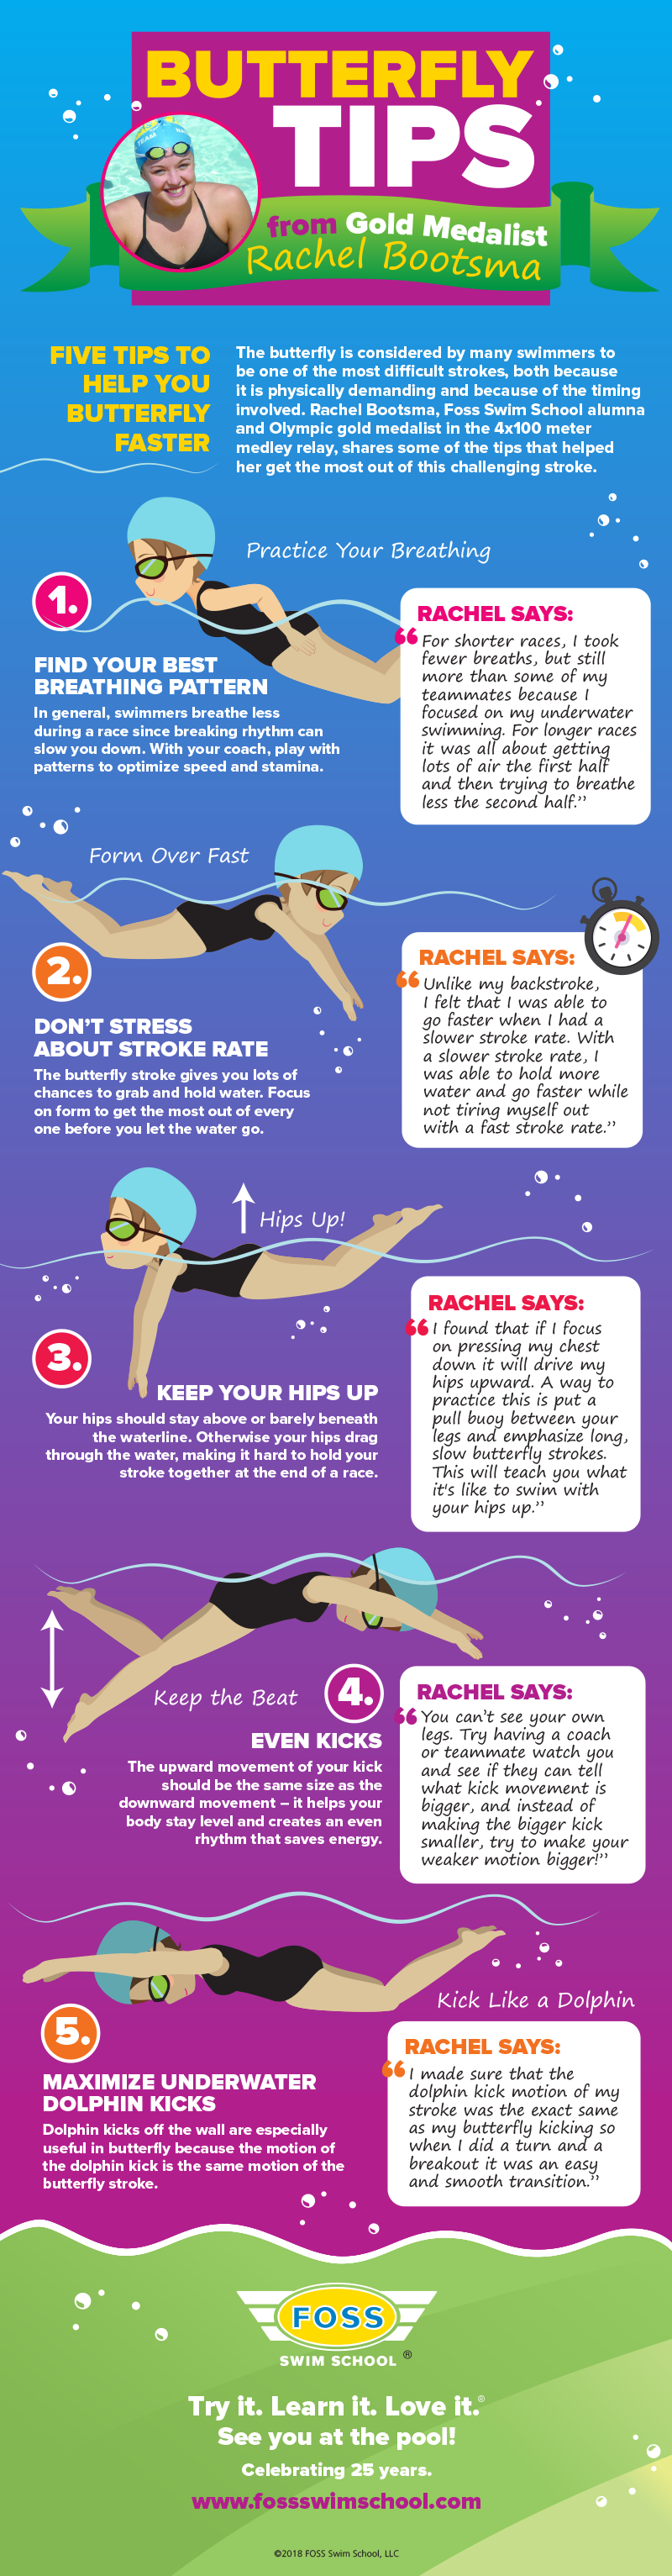 Five Tips to Swim Your Best Butterfly - Foss Swim School